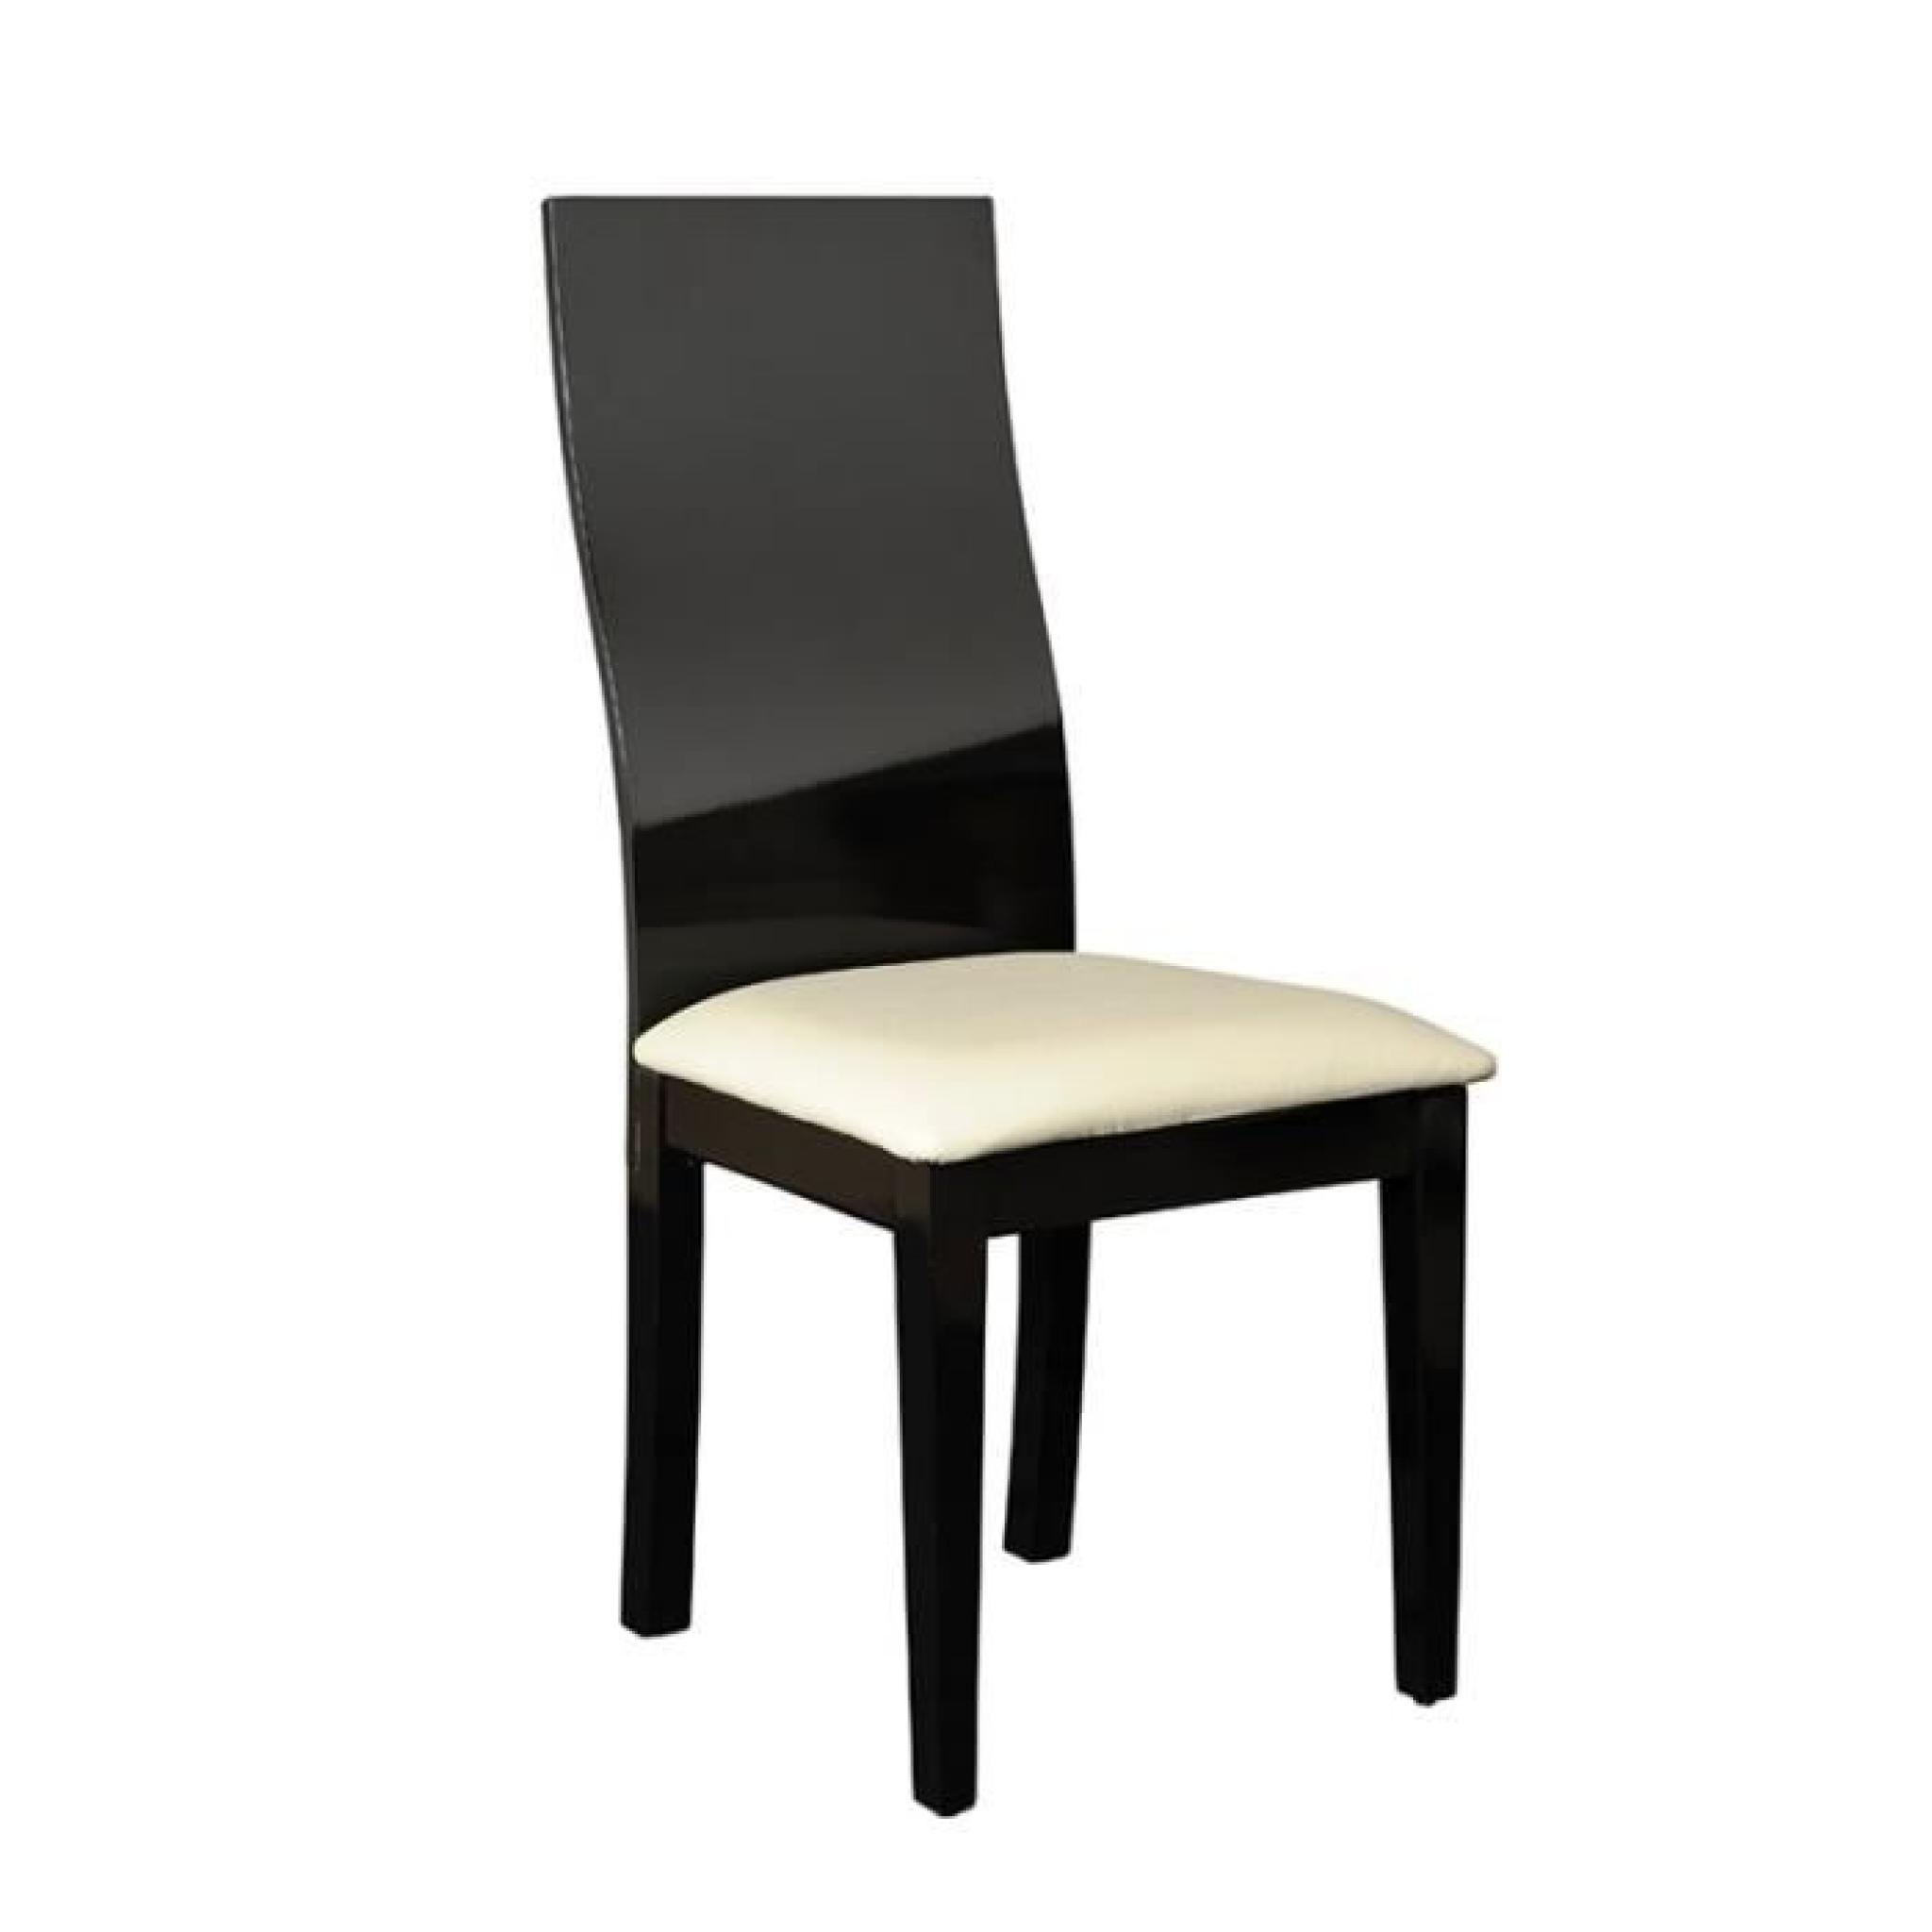 Duo de chaises Noires - CARMEN - L 46 x l 55 x H 100 pas cher